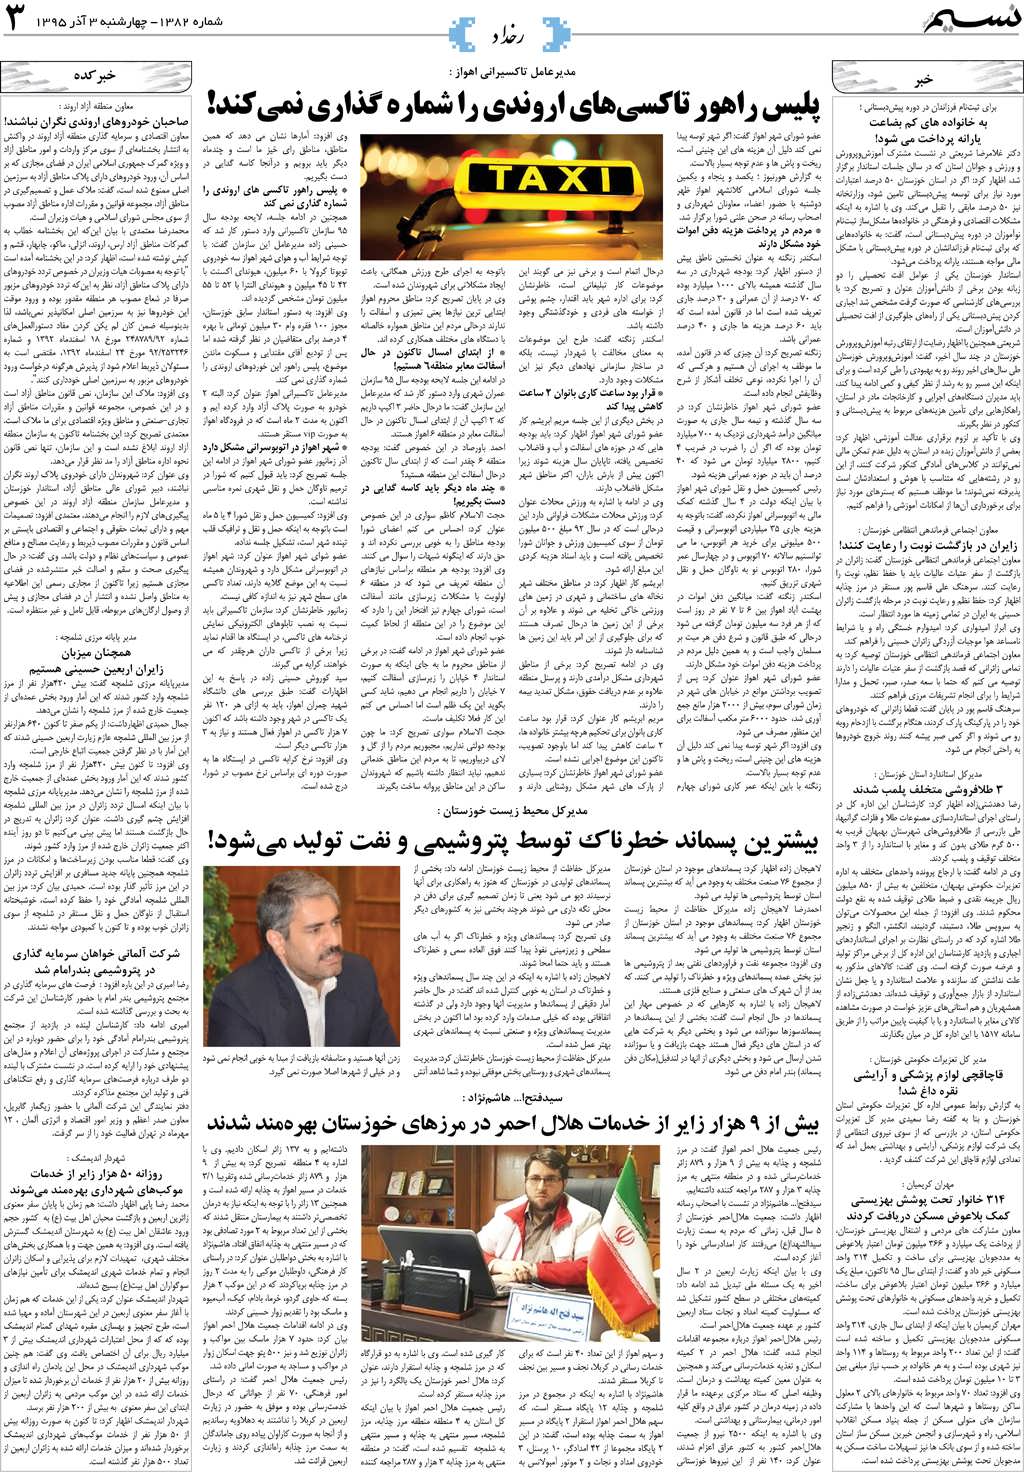 صفحه رخداد روزنامه نسیم شماره 1382